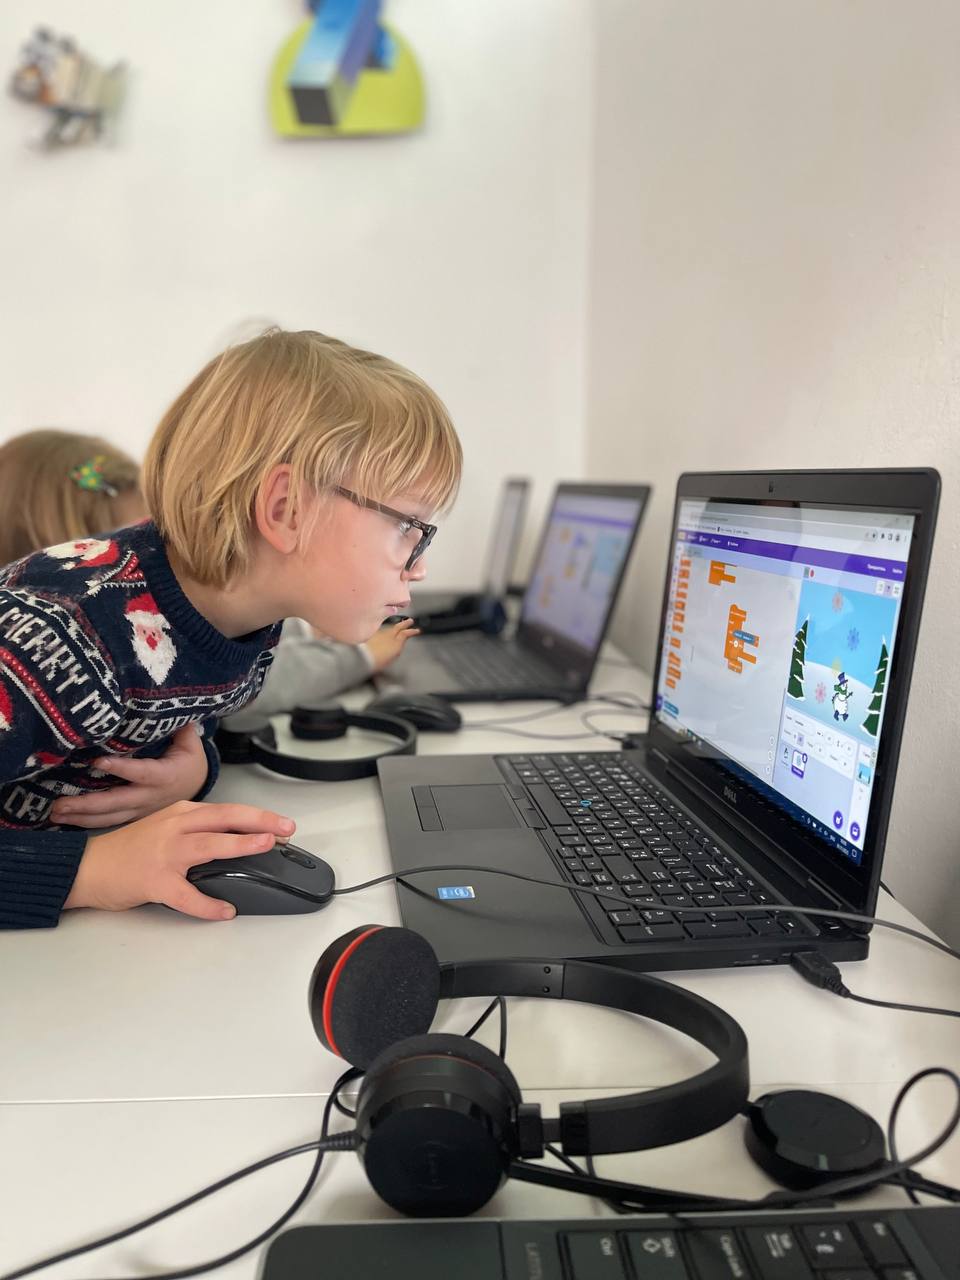 Уже 546 детей бесплатно учатся программированию на курсах Scratch от Favbet Foundation и Code Club Украина